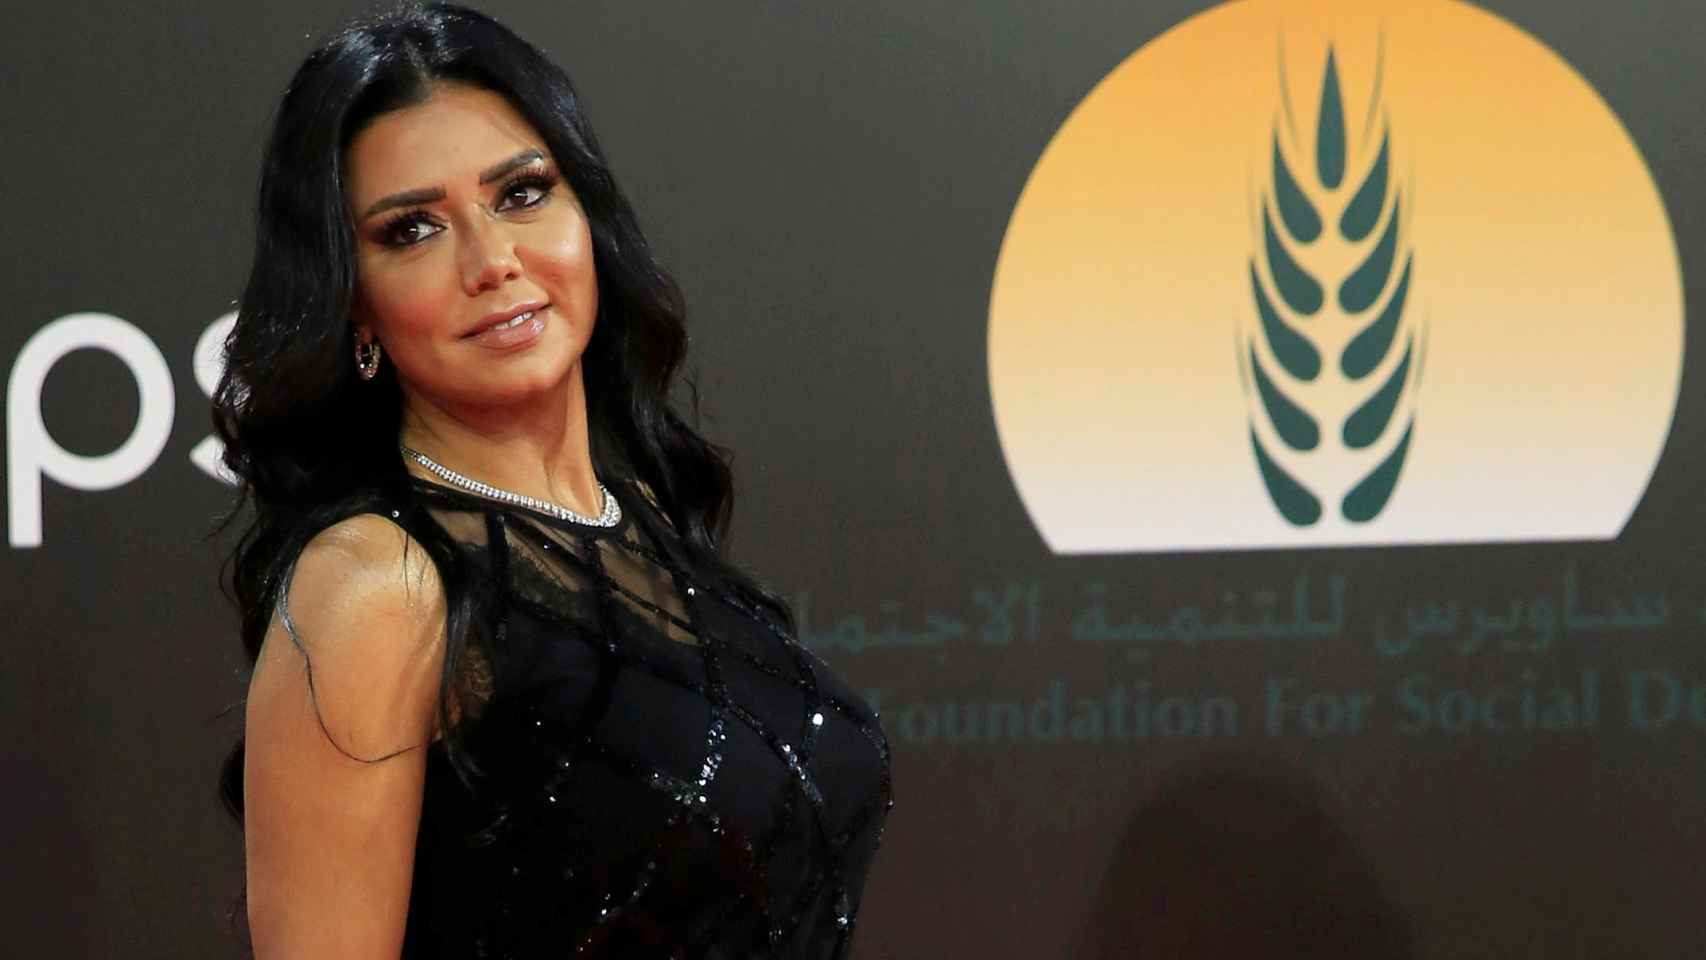 Una actriz será juzgada en Egipto por llevar un vestido transparente